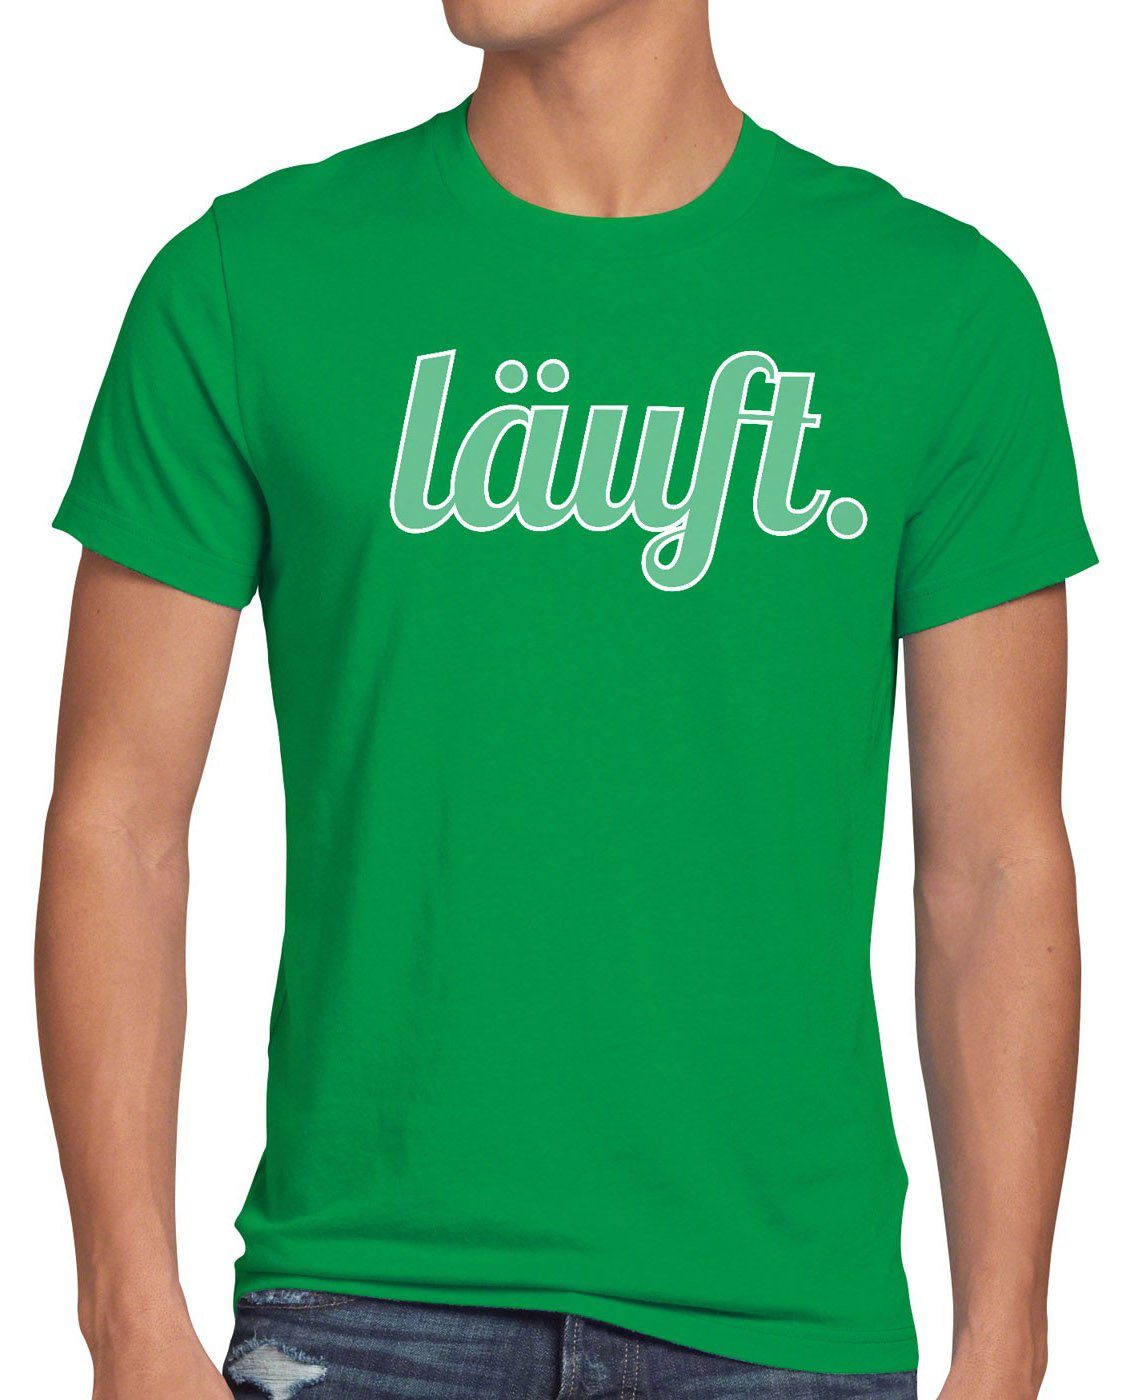 kostengünstig style3 Print-Shirt Herren T-Shirt läuft grün meme Spruchshirt top Fun dir Shirt mir bei kult Funshirt